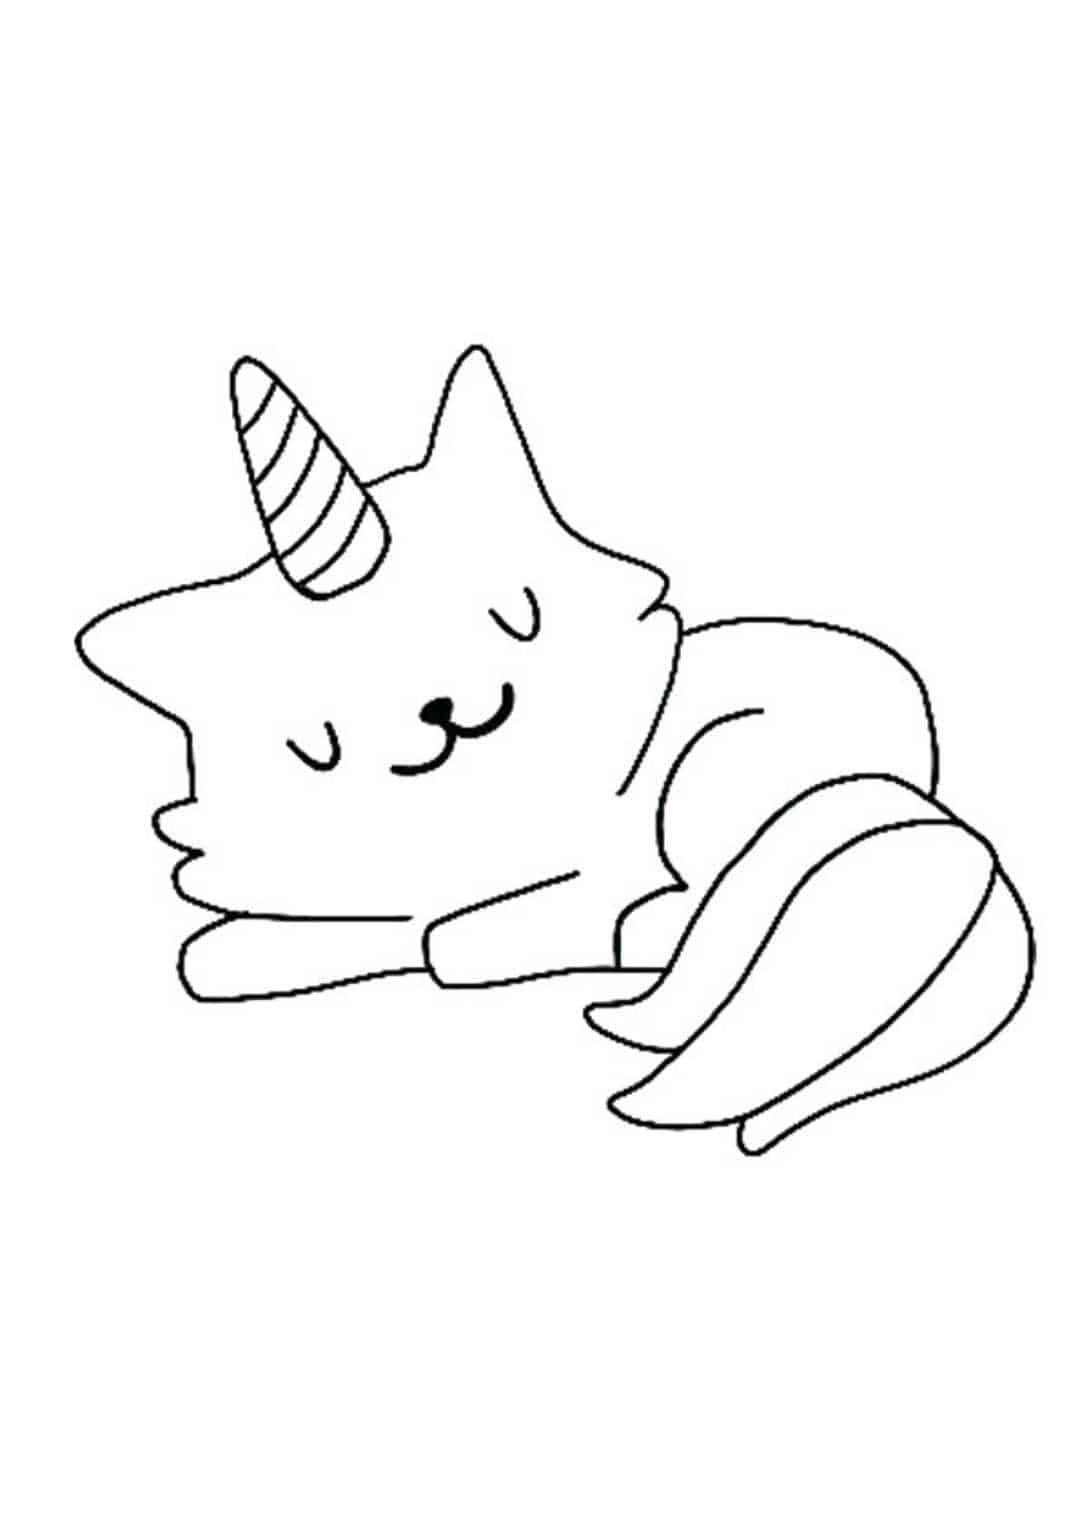 Página para colorir de unicórnio adormecido de gatinho fofo